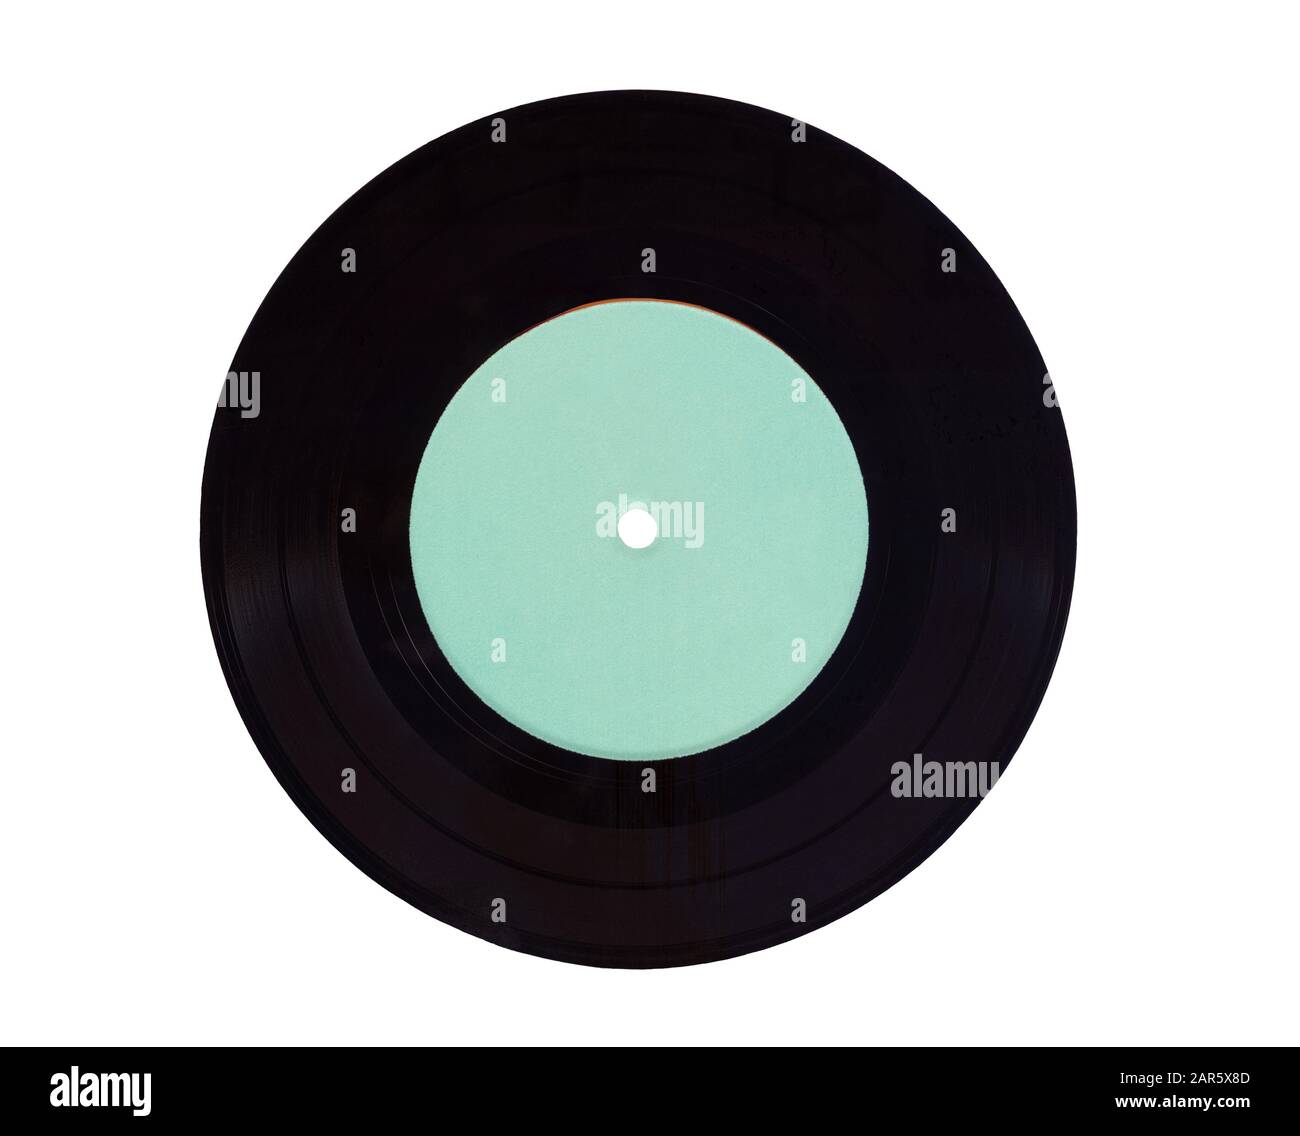 Ancien disque vinyle noir rétro de 33 tr/min avec étiquette blanche de couleur bleue sur fond blanc. Il s'agit d'une numérisation haute résolution. Banque D'Images